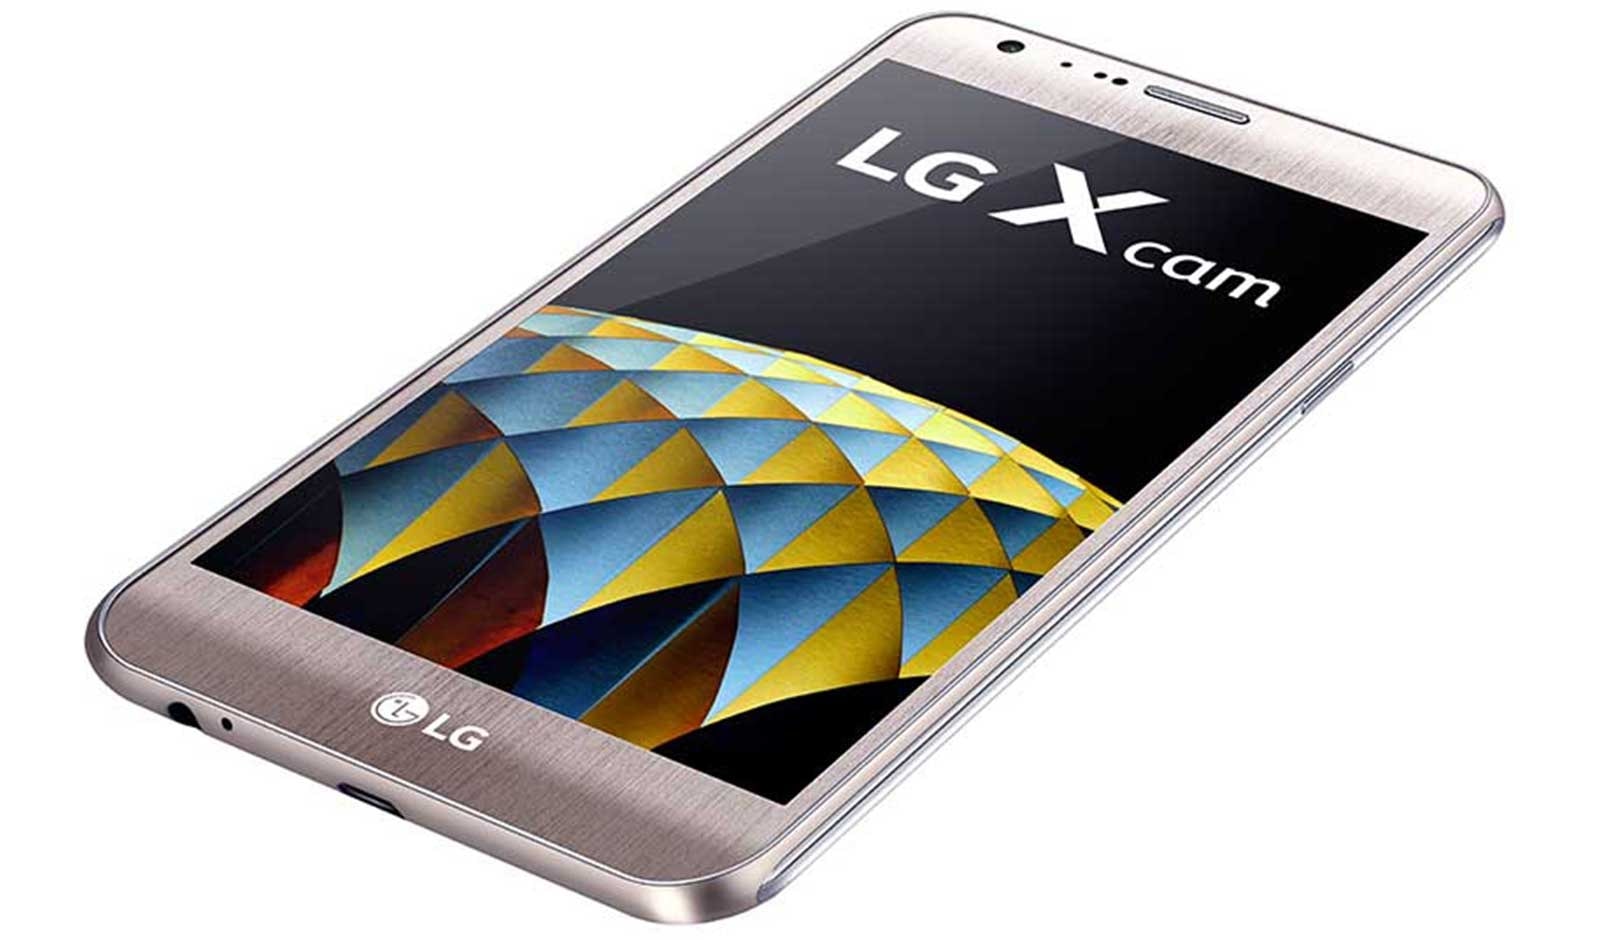 LG Х cam. LG x510. LG x4 NARXLARI. LG X cam черный. Lg x 4 0